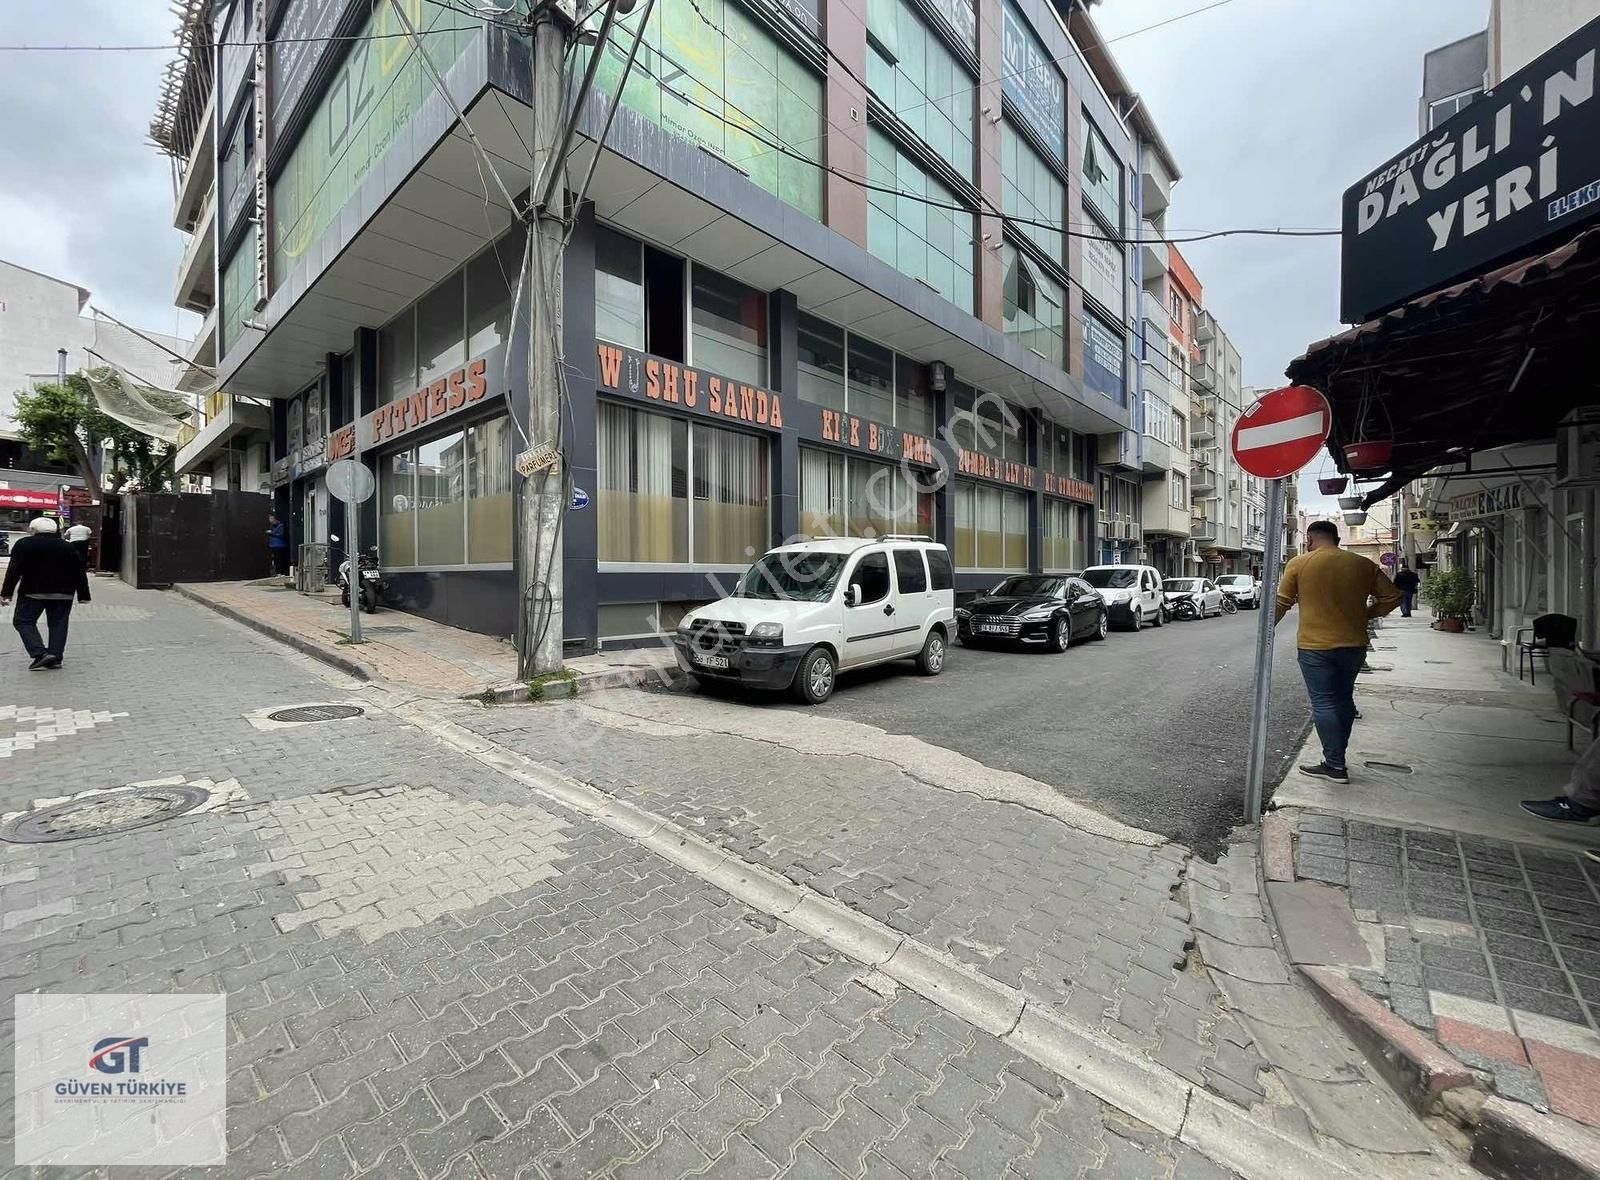 Karacabey Runguşpaşa Satılık Dükkan & Mağaza Güven türkiyeden MERKEZDE SATILIK DÜKKAN 200 m2